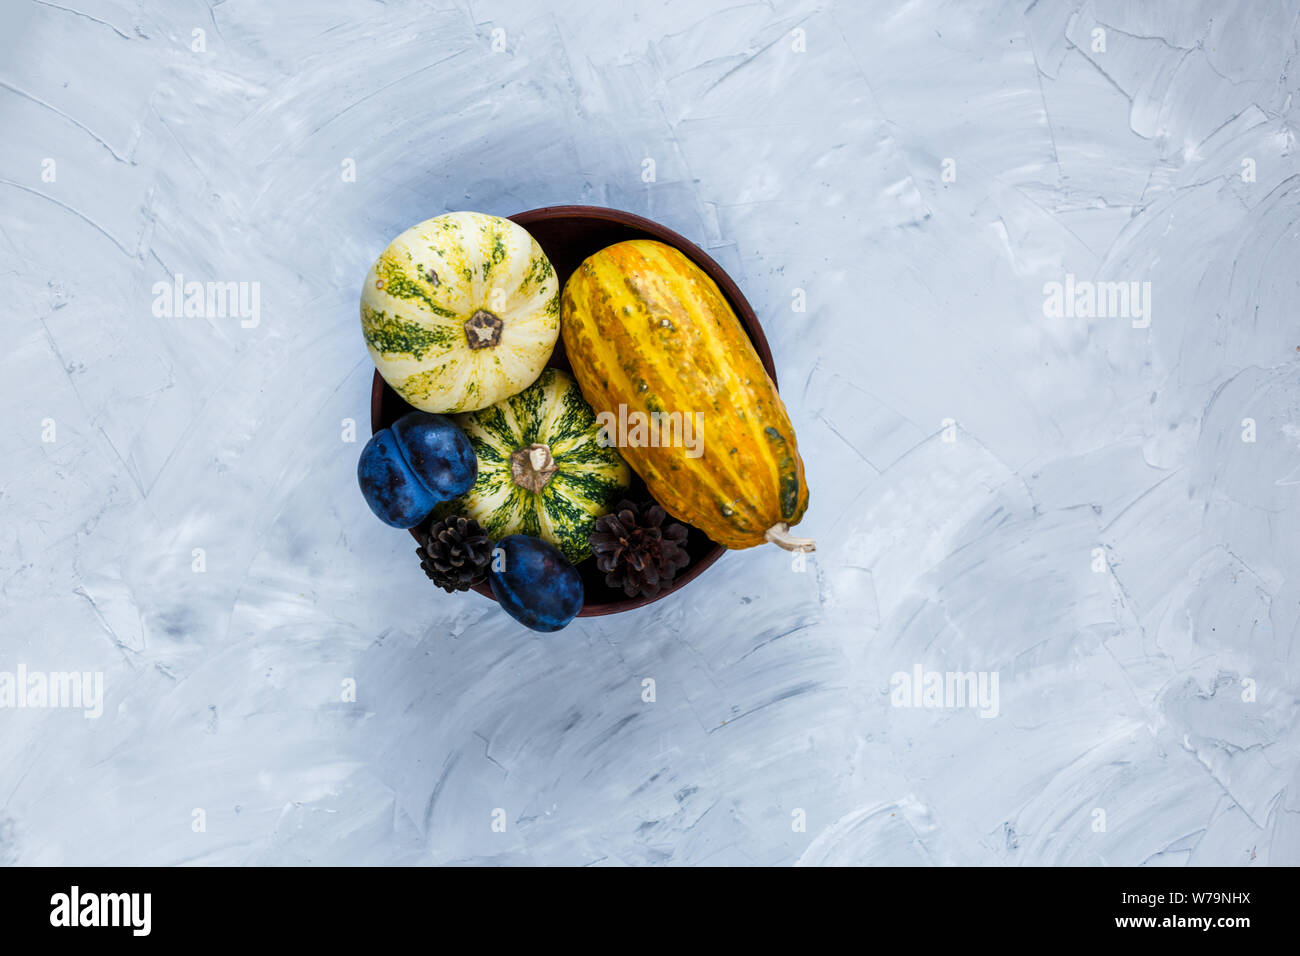 Thanksgiving Day Zusammensetzung von Gemüse und Obst auf grauem Hintergrund. Herbst Ernte Konzept. Kürbisse, Birnen, Pflaumen, Äpfel auf Tabelle, Ansicht von oben, Stockfoto